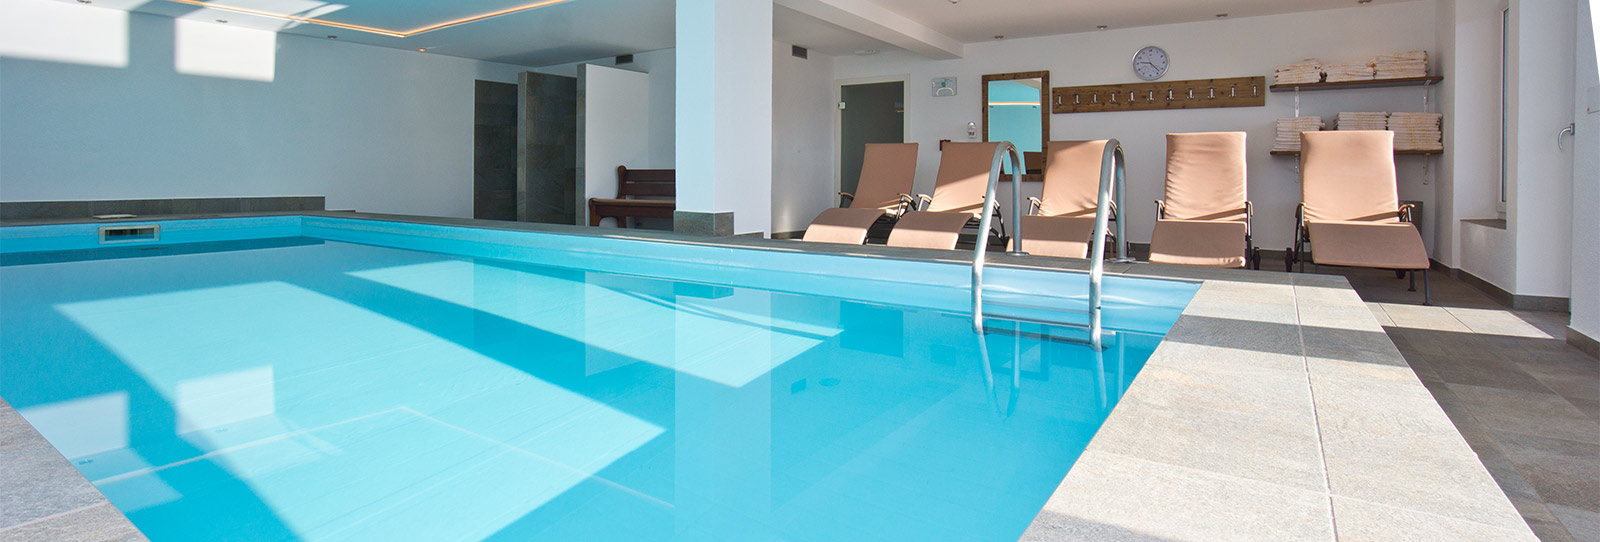 Schwimmbad in Meransen - Hotel Oberlechner